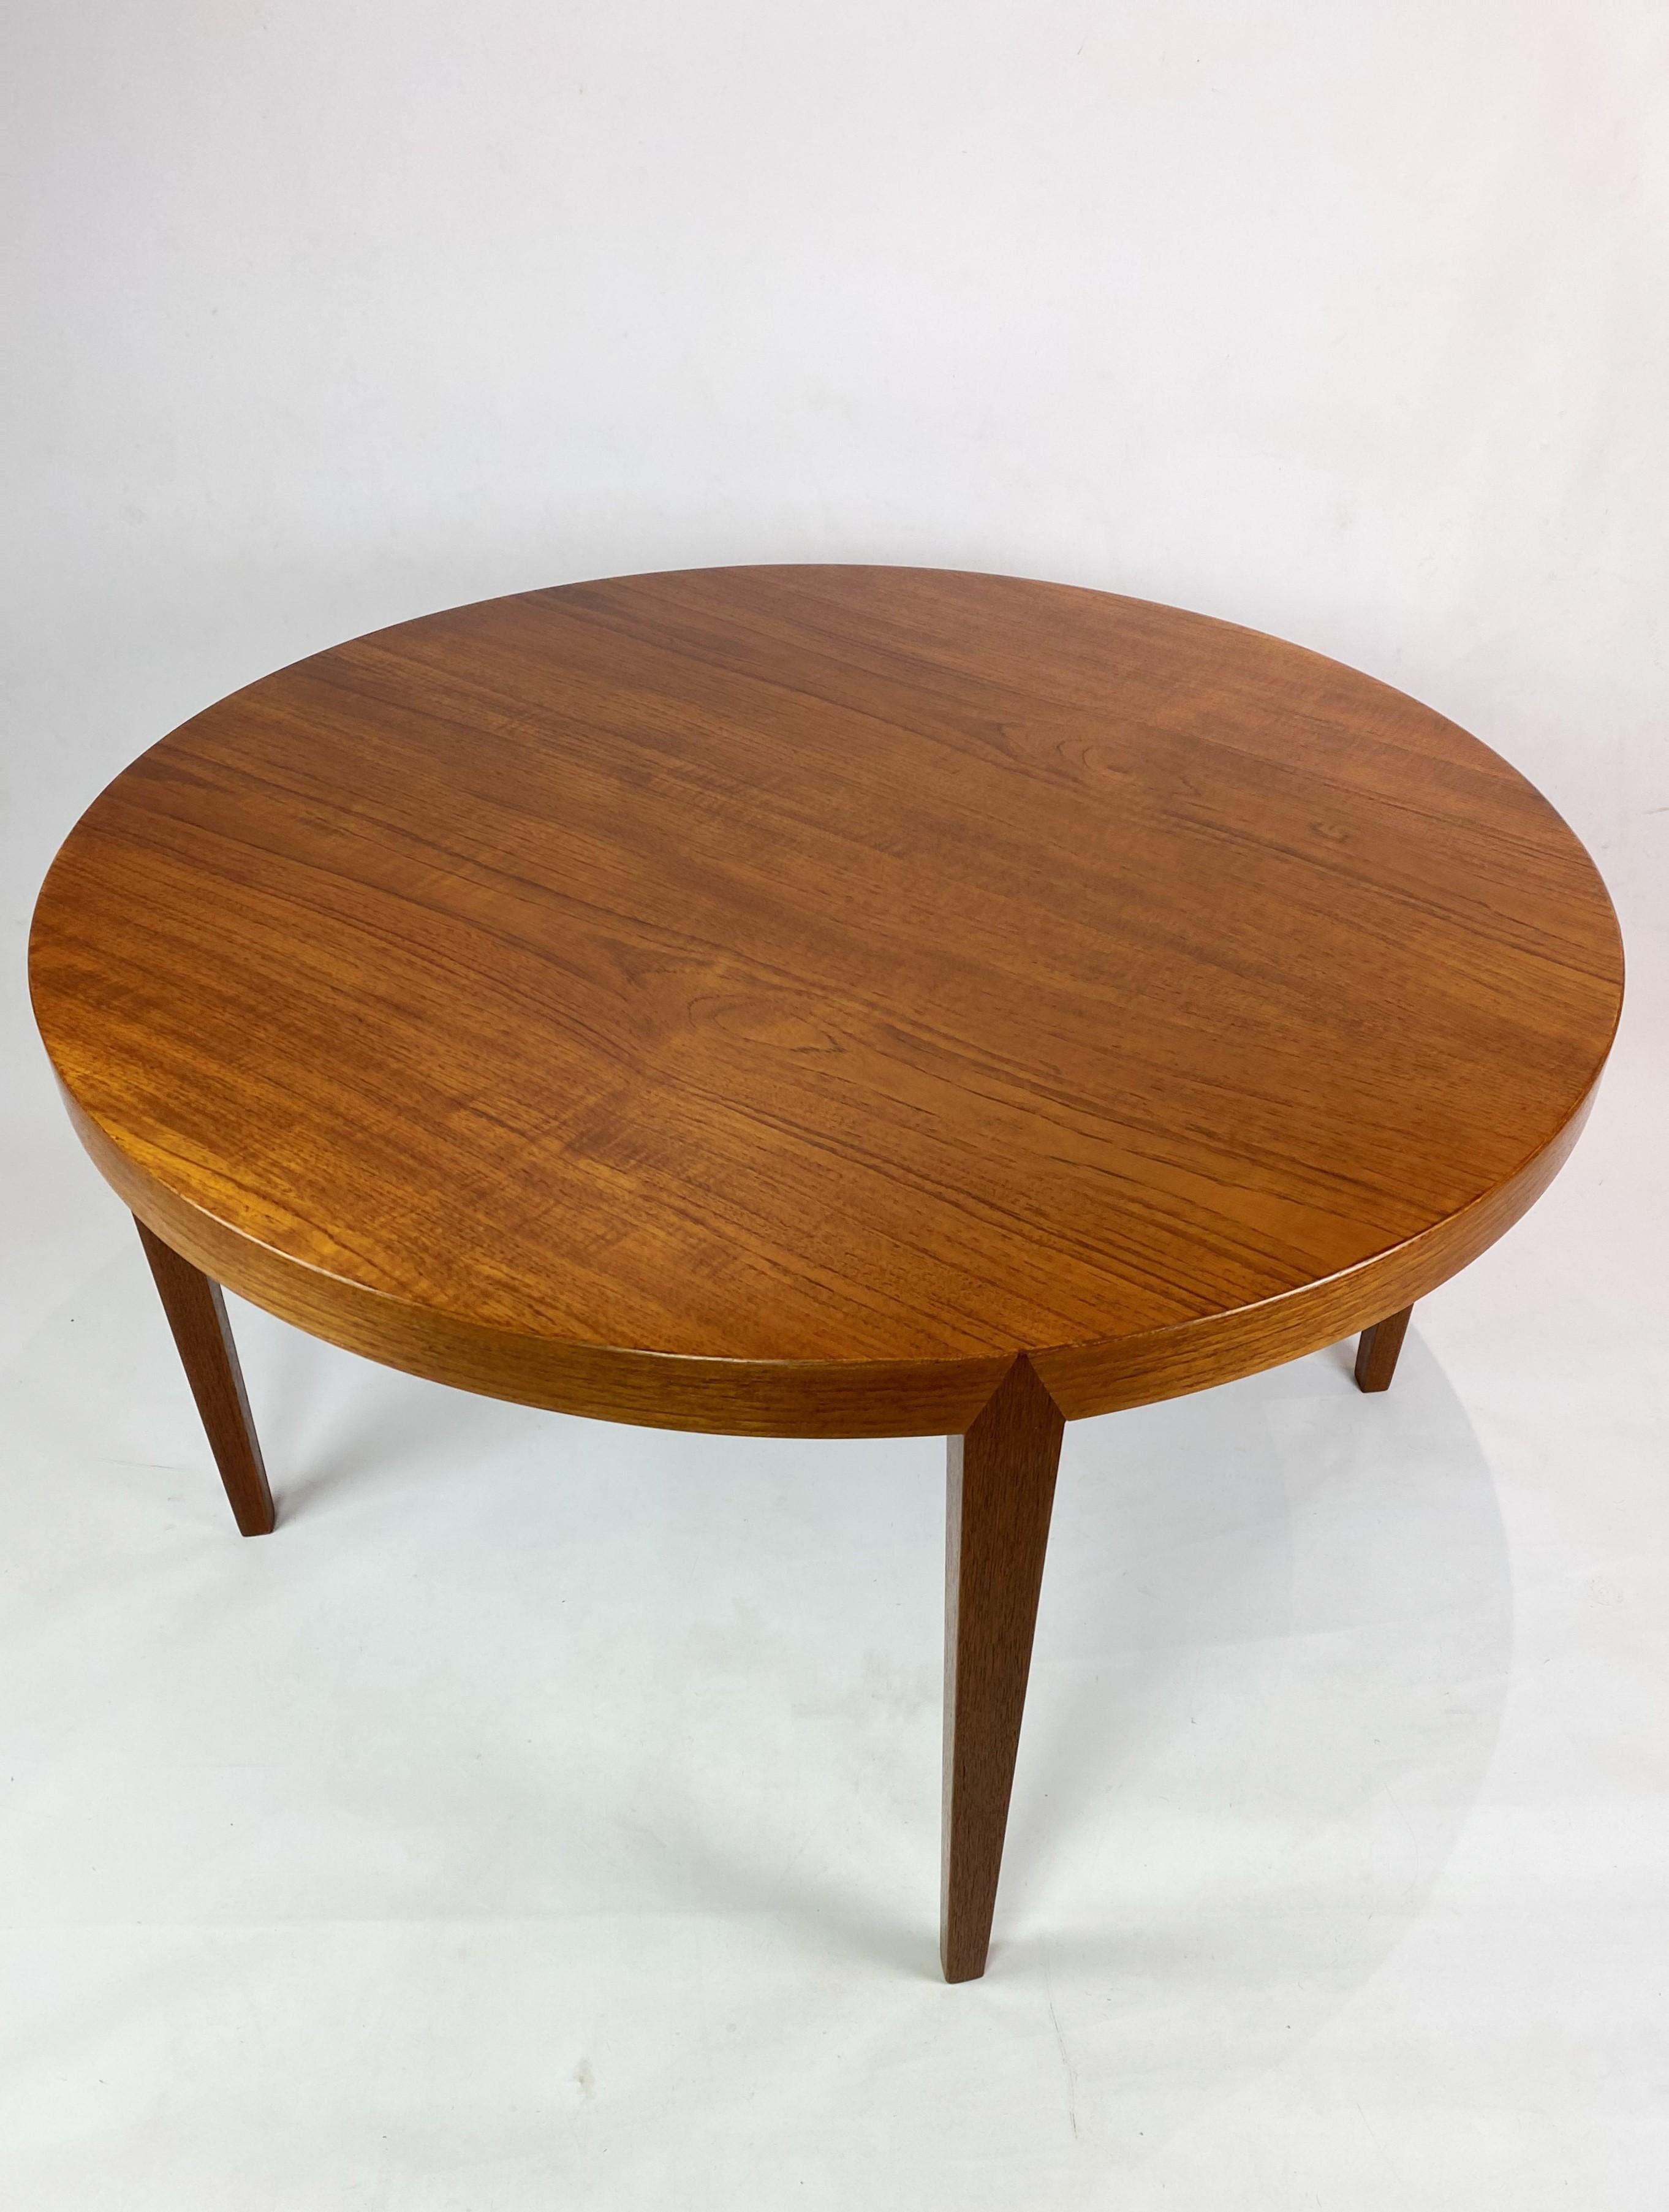 Der Couchtisch aus Teakholz, entworfen von Severin Hansen und hergestellt von Haslev Furniture in den 1960er Jahren, ist ein typisches Beispiel für dänisches Design aus der Mitte des Jahrhunderts.

Dieser Tisch aus Teakholz, das für seine warmen